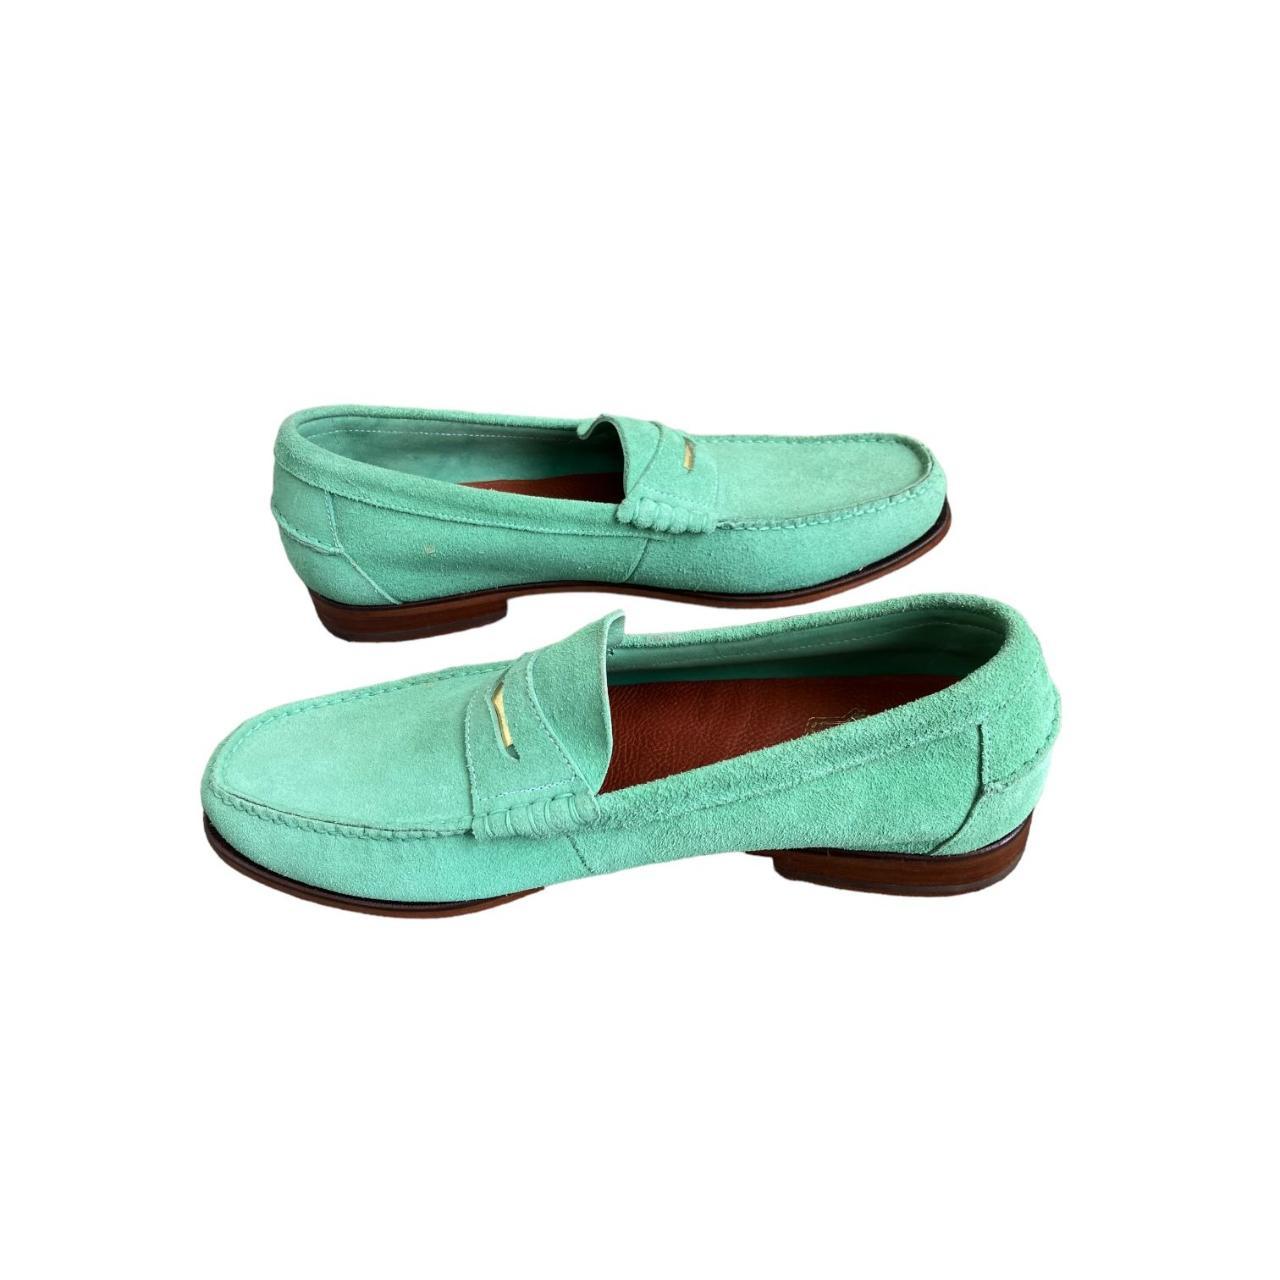 Men's Vintage Suede Mint Green Loafers Size 12D... - Depop